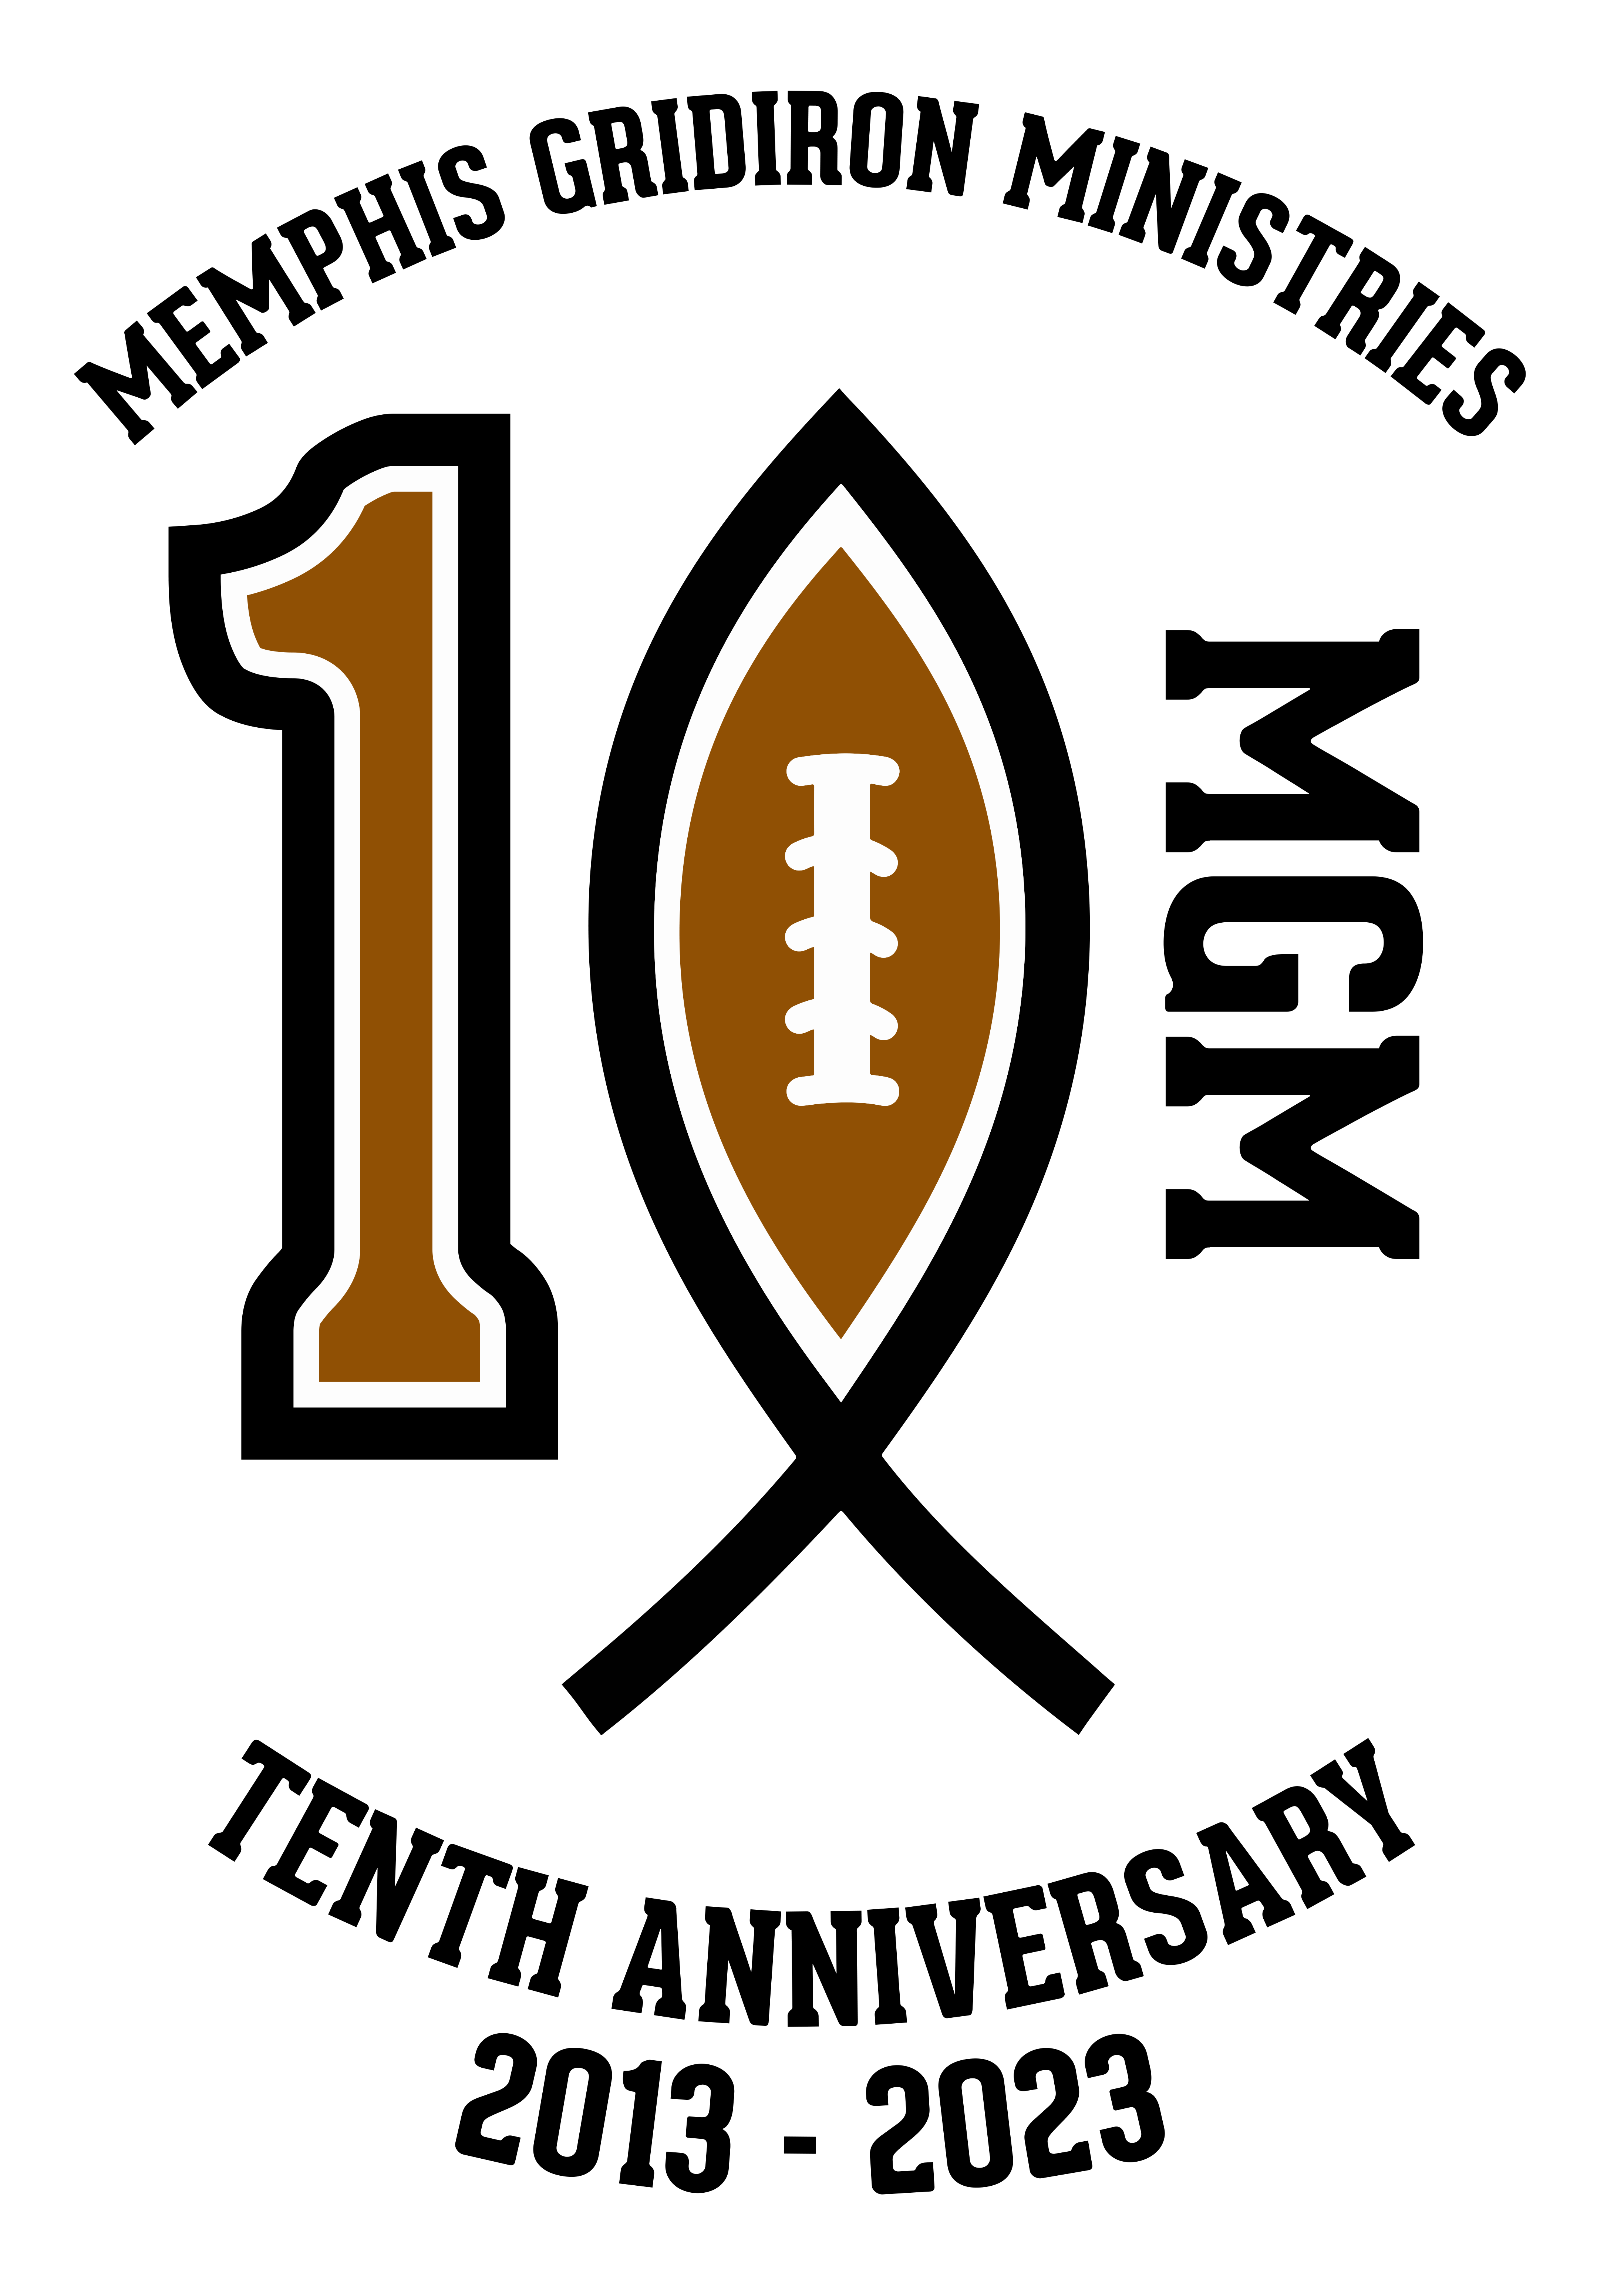 Memphis Gridiron Ministries logo